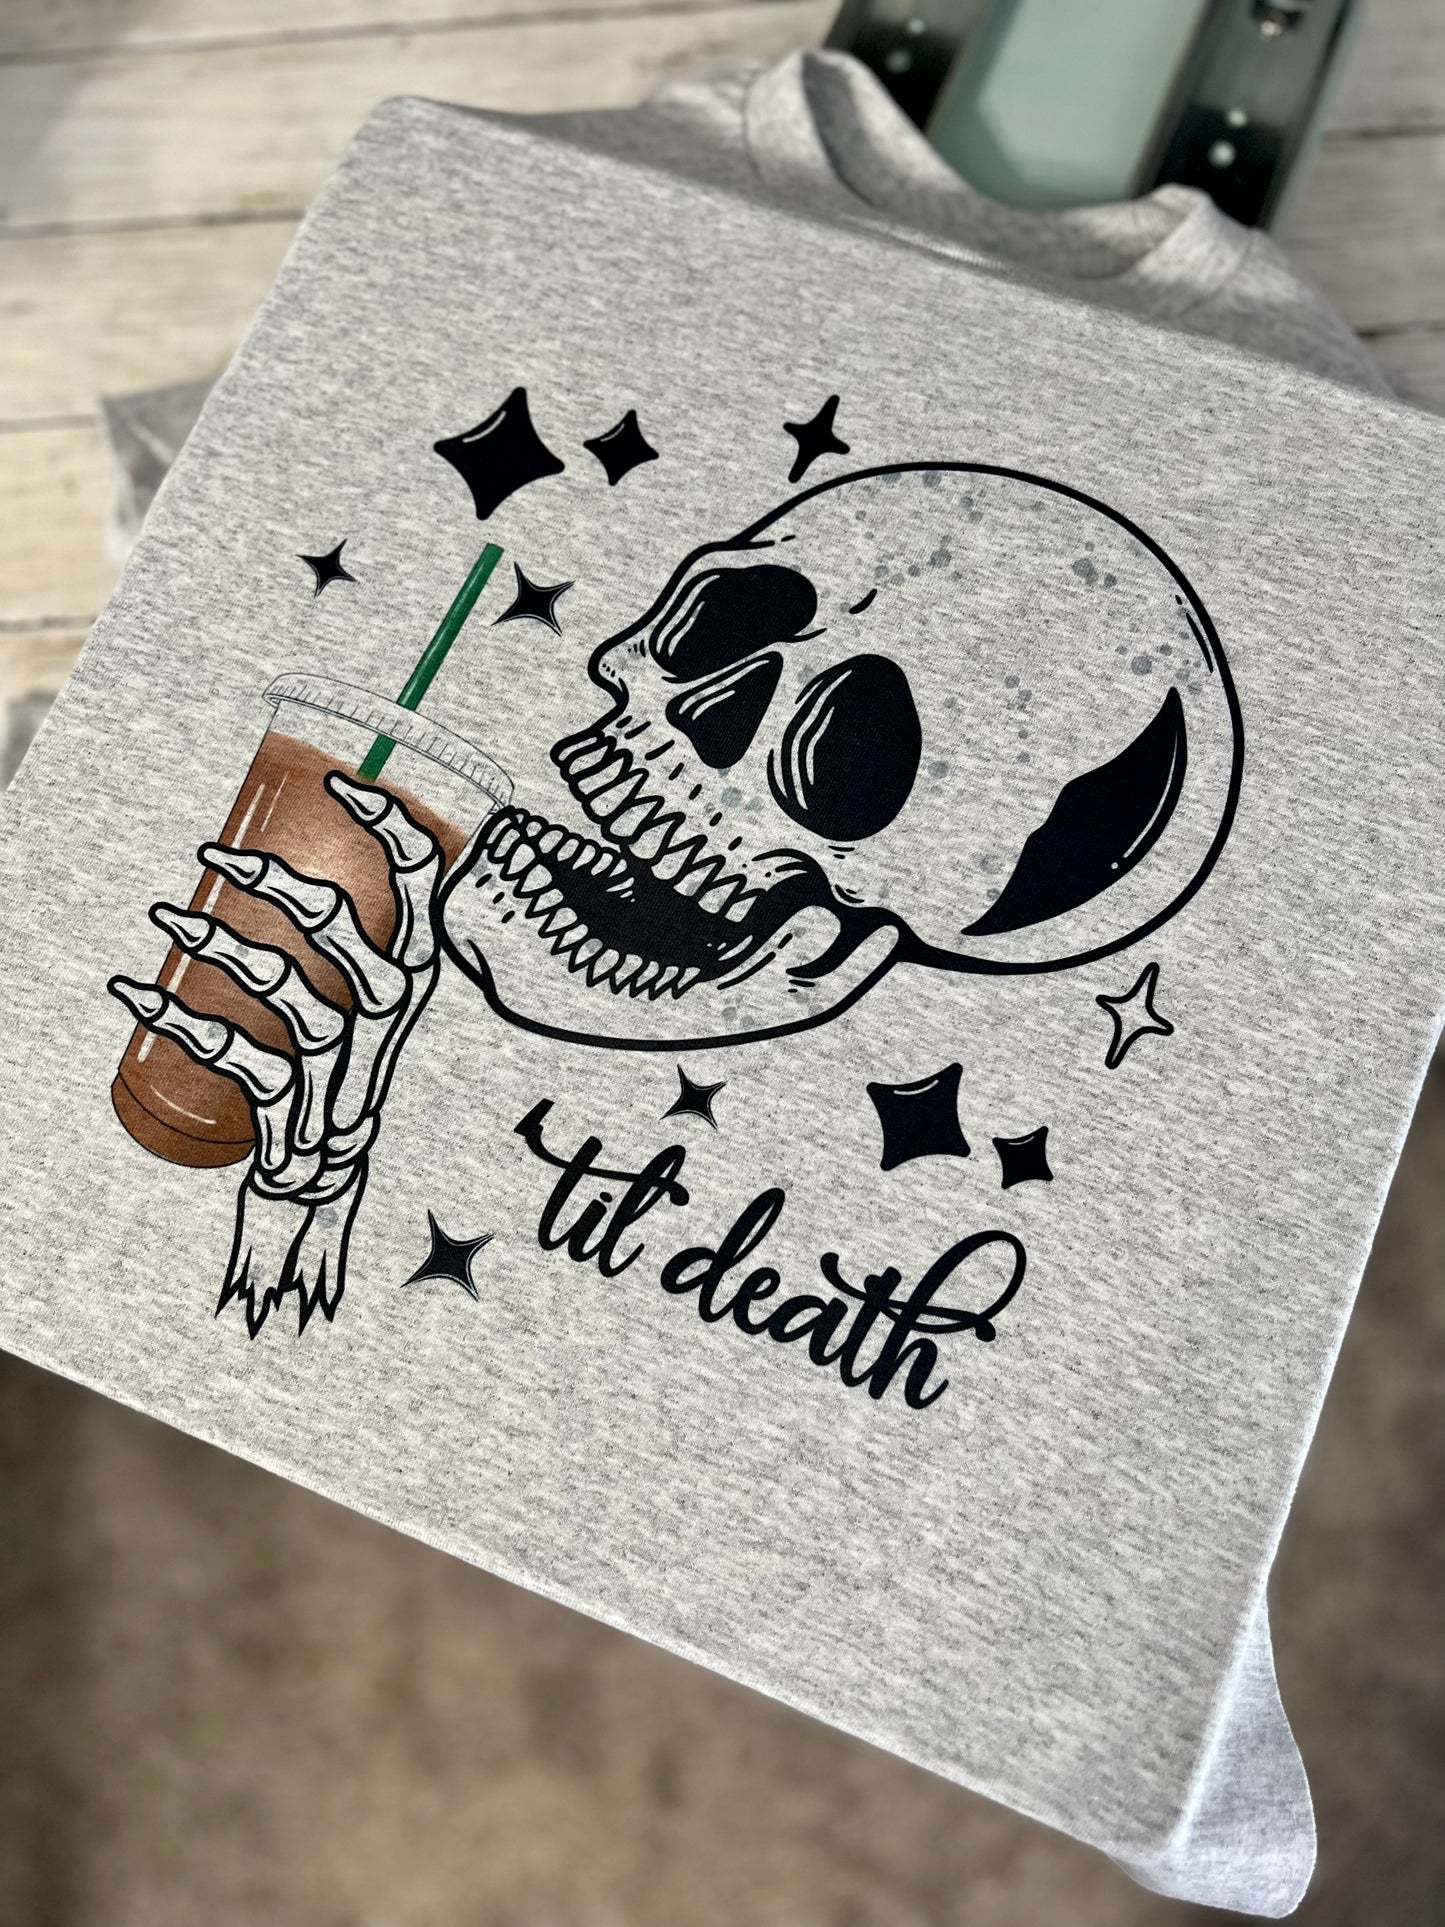 Coffee til death